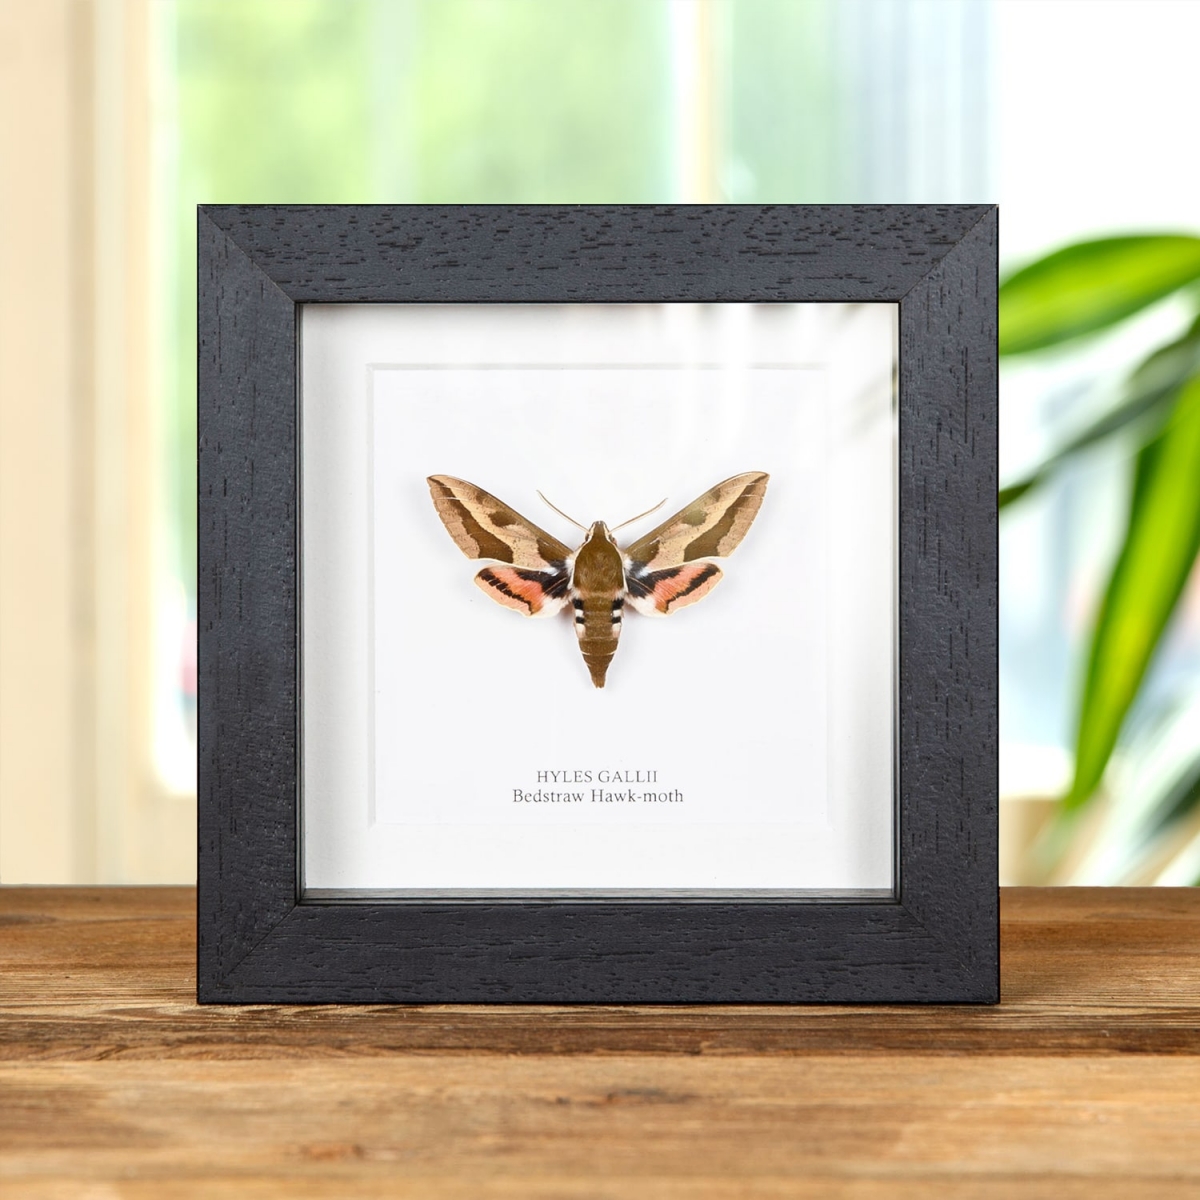 Minibeast Bedstraw Hawk-moth in Box Frame (Hyles gallii)